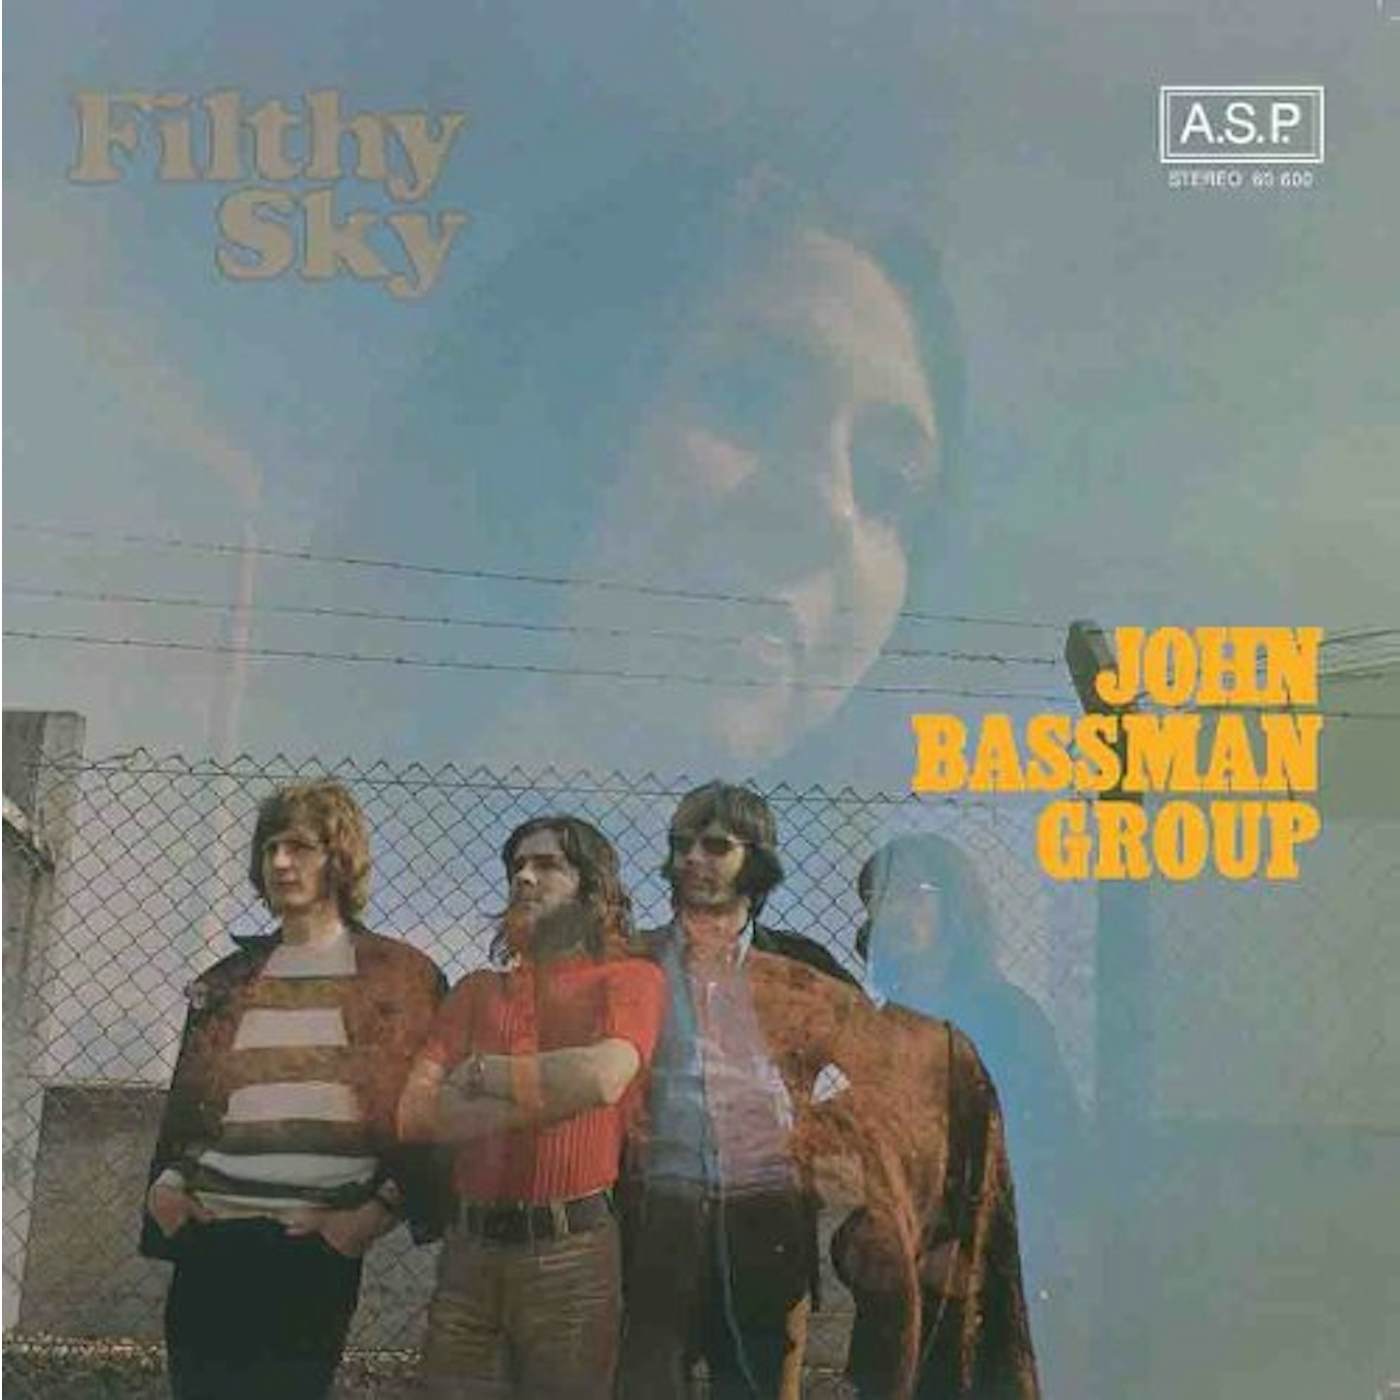 John Group Bassman Filthy Sky Vinyl Record